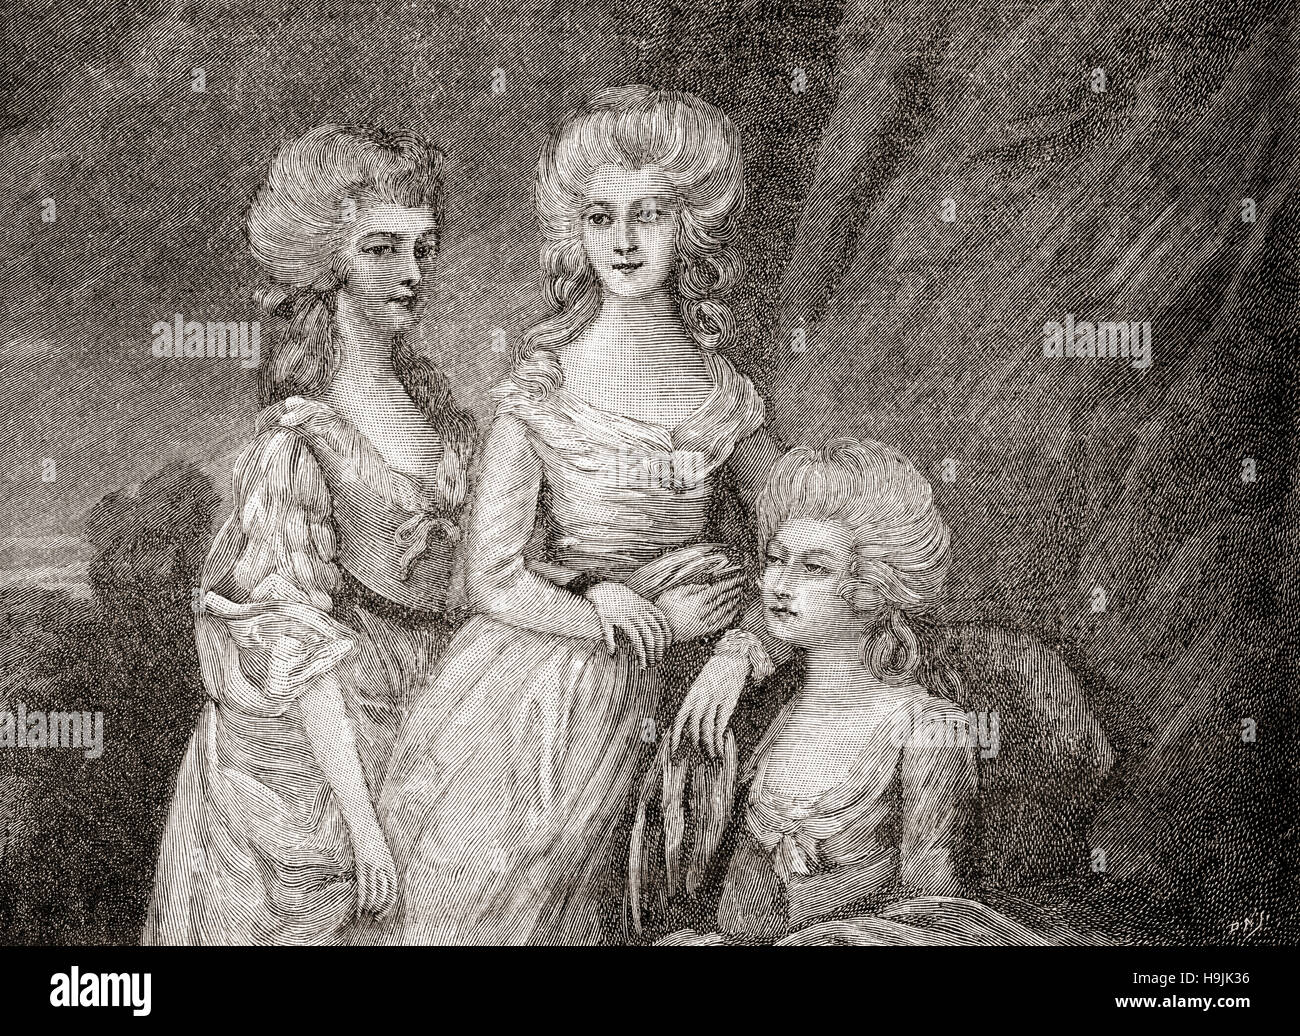 La primogenita di tre Figlie di re Giorgio III. Da sinistra a destra: Charlotte, Princess Royal, 1766 - 1828. Ella è la regina del Württemberg come moglie del Re Frederick; Principessa Augusta Sophia del Regno Unito, 1768 - 1840 e la Principessa Elisabetta del Regno Unito, 1770 - 1840. Foto Stock